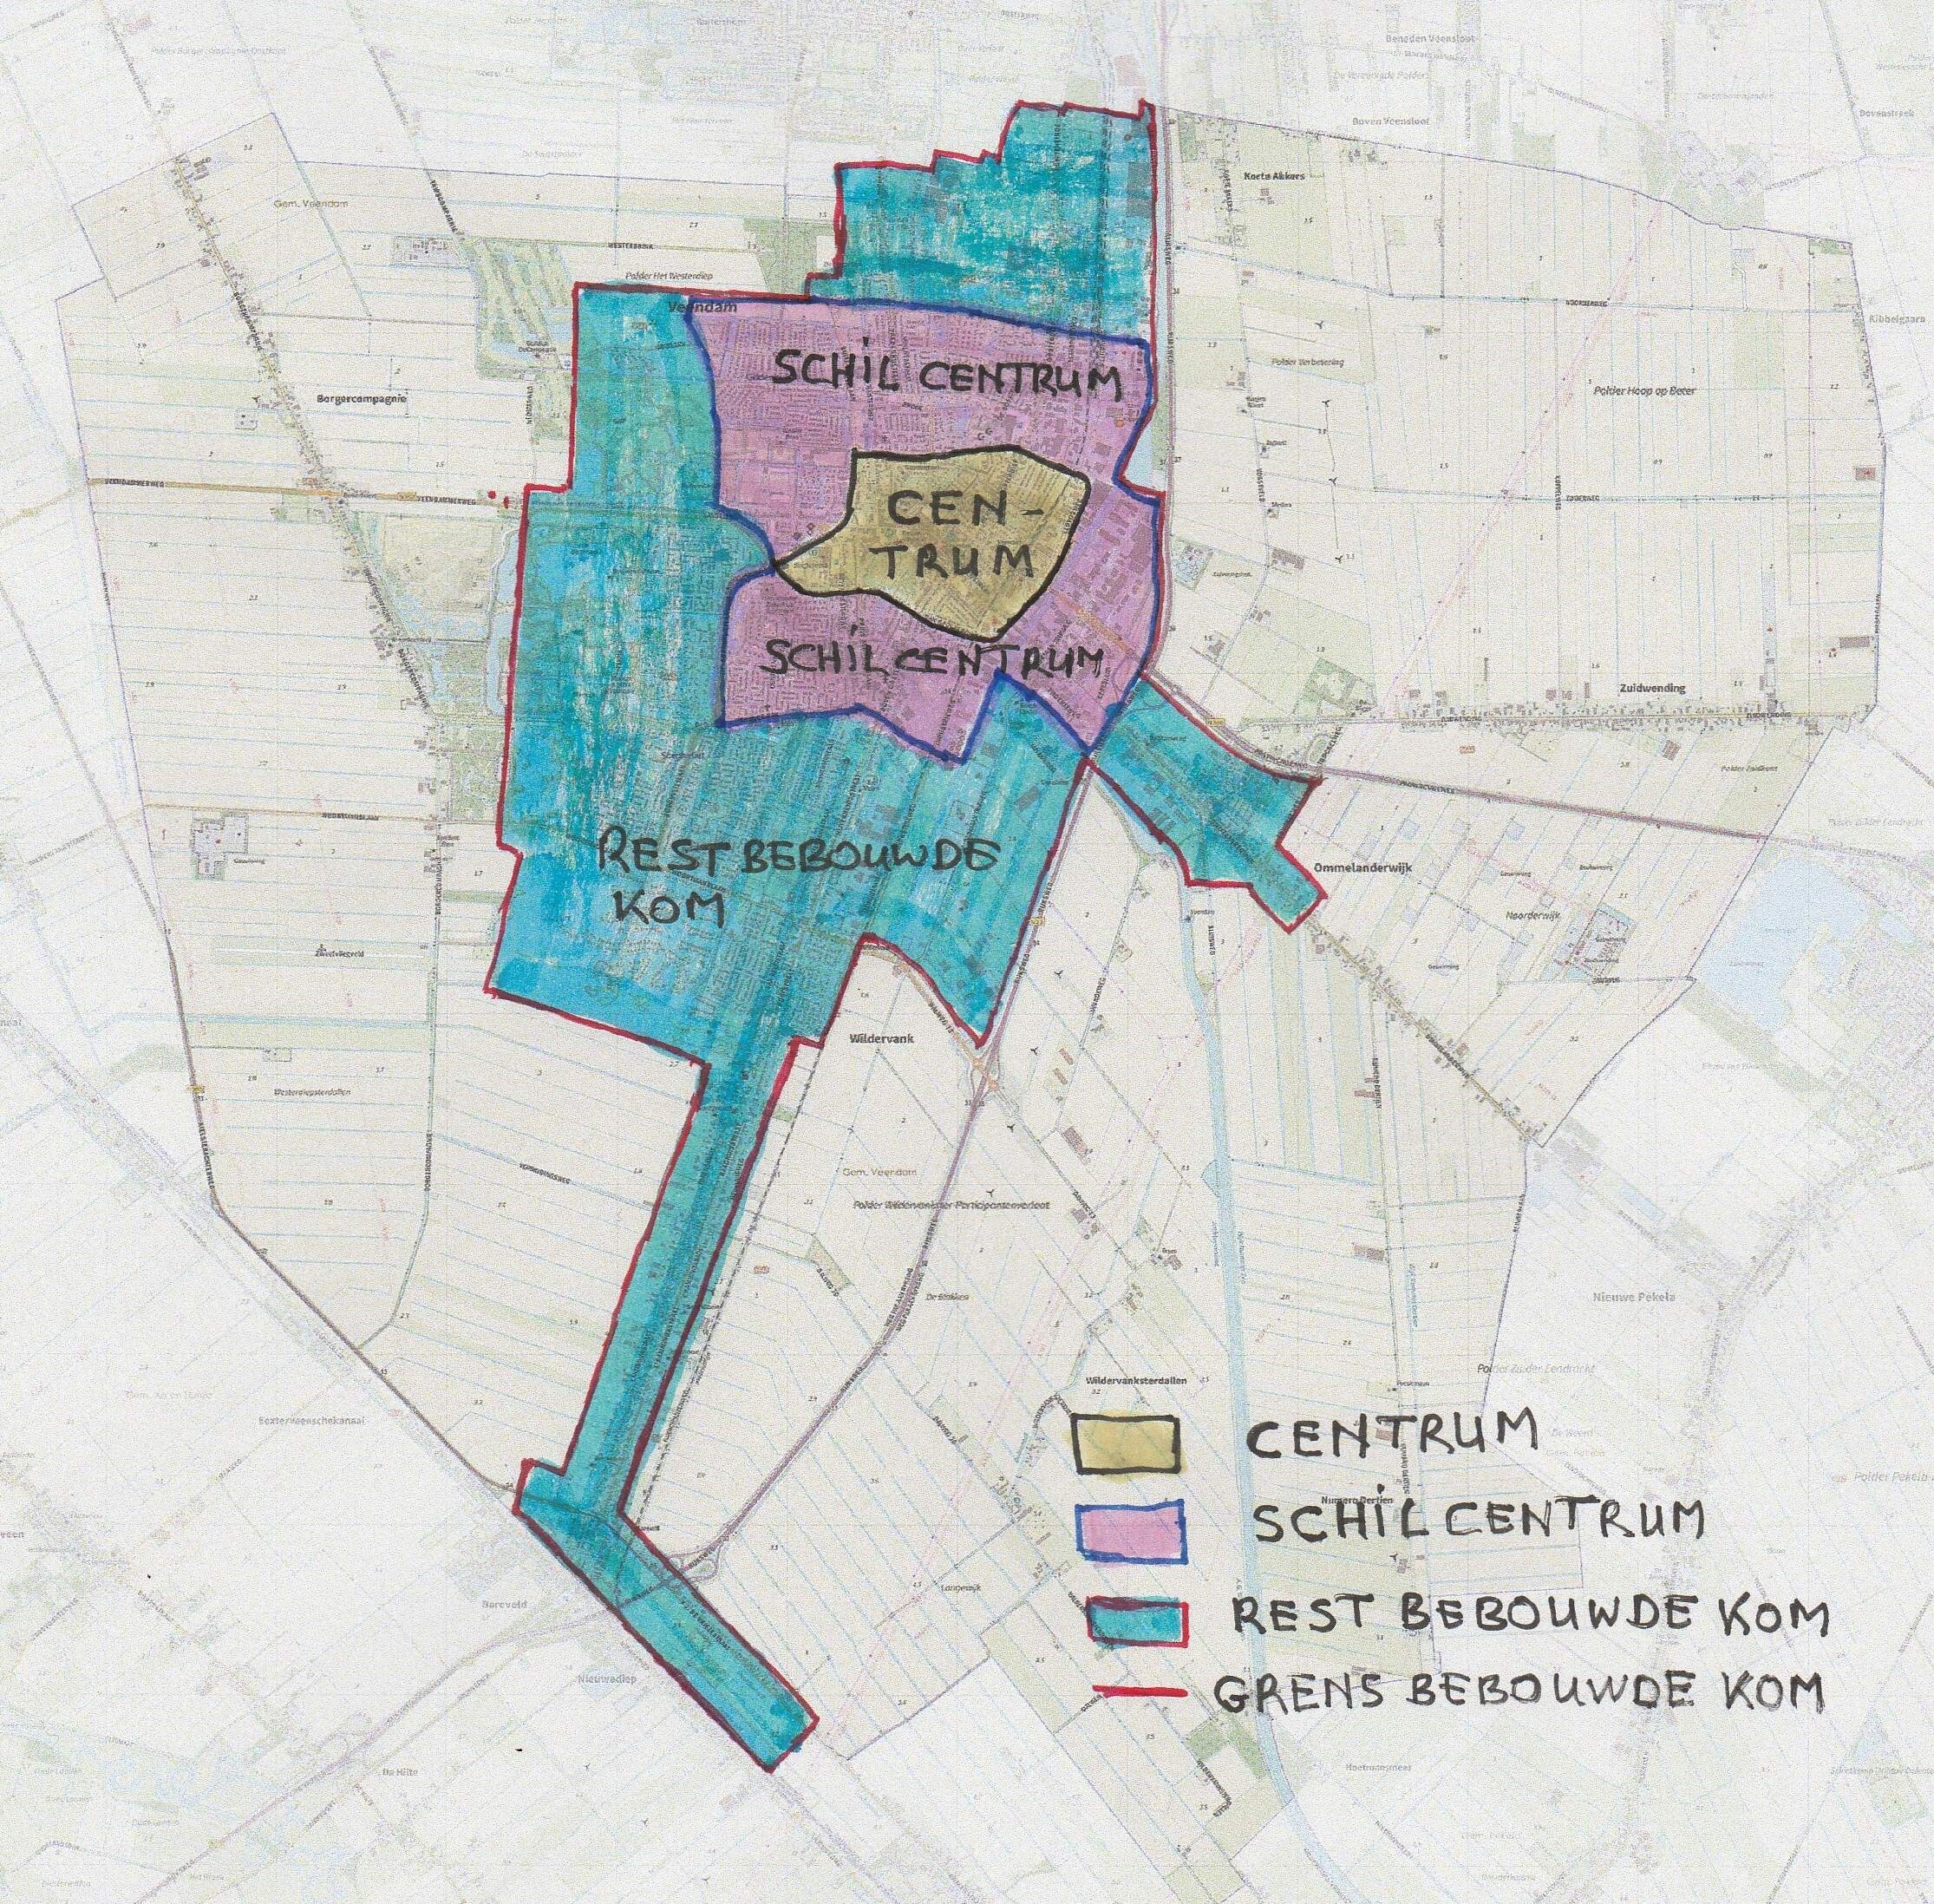 Kaart indeling gemeente: centrum; schilcentrum; rest bebouwde kom en grens bebouwde kom